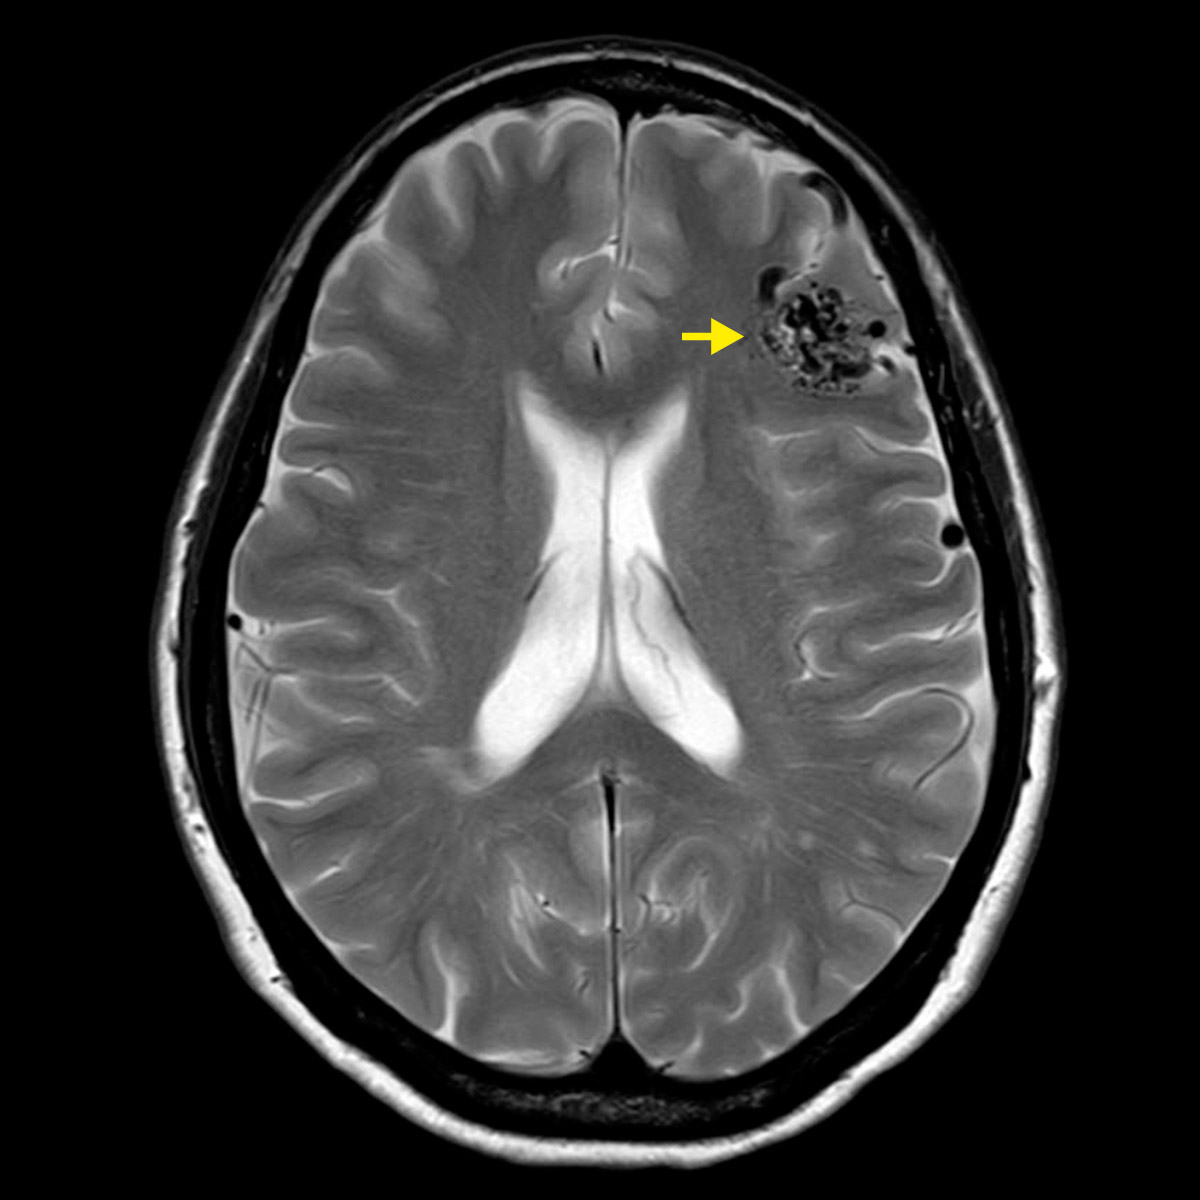 IRM du crâne avec MAV clairement visible en haut à droite de l'image. Une flèche jaune pointe vers la MAV. Les vaisseaux de la MAV sont visibles sous forme de points noirs et de lignes serpentines.